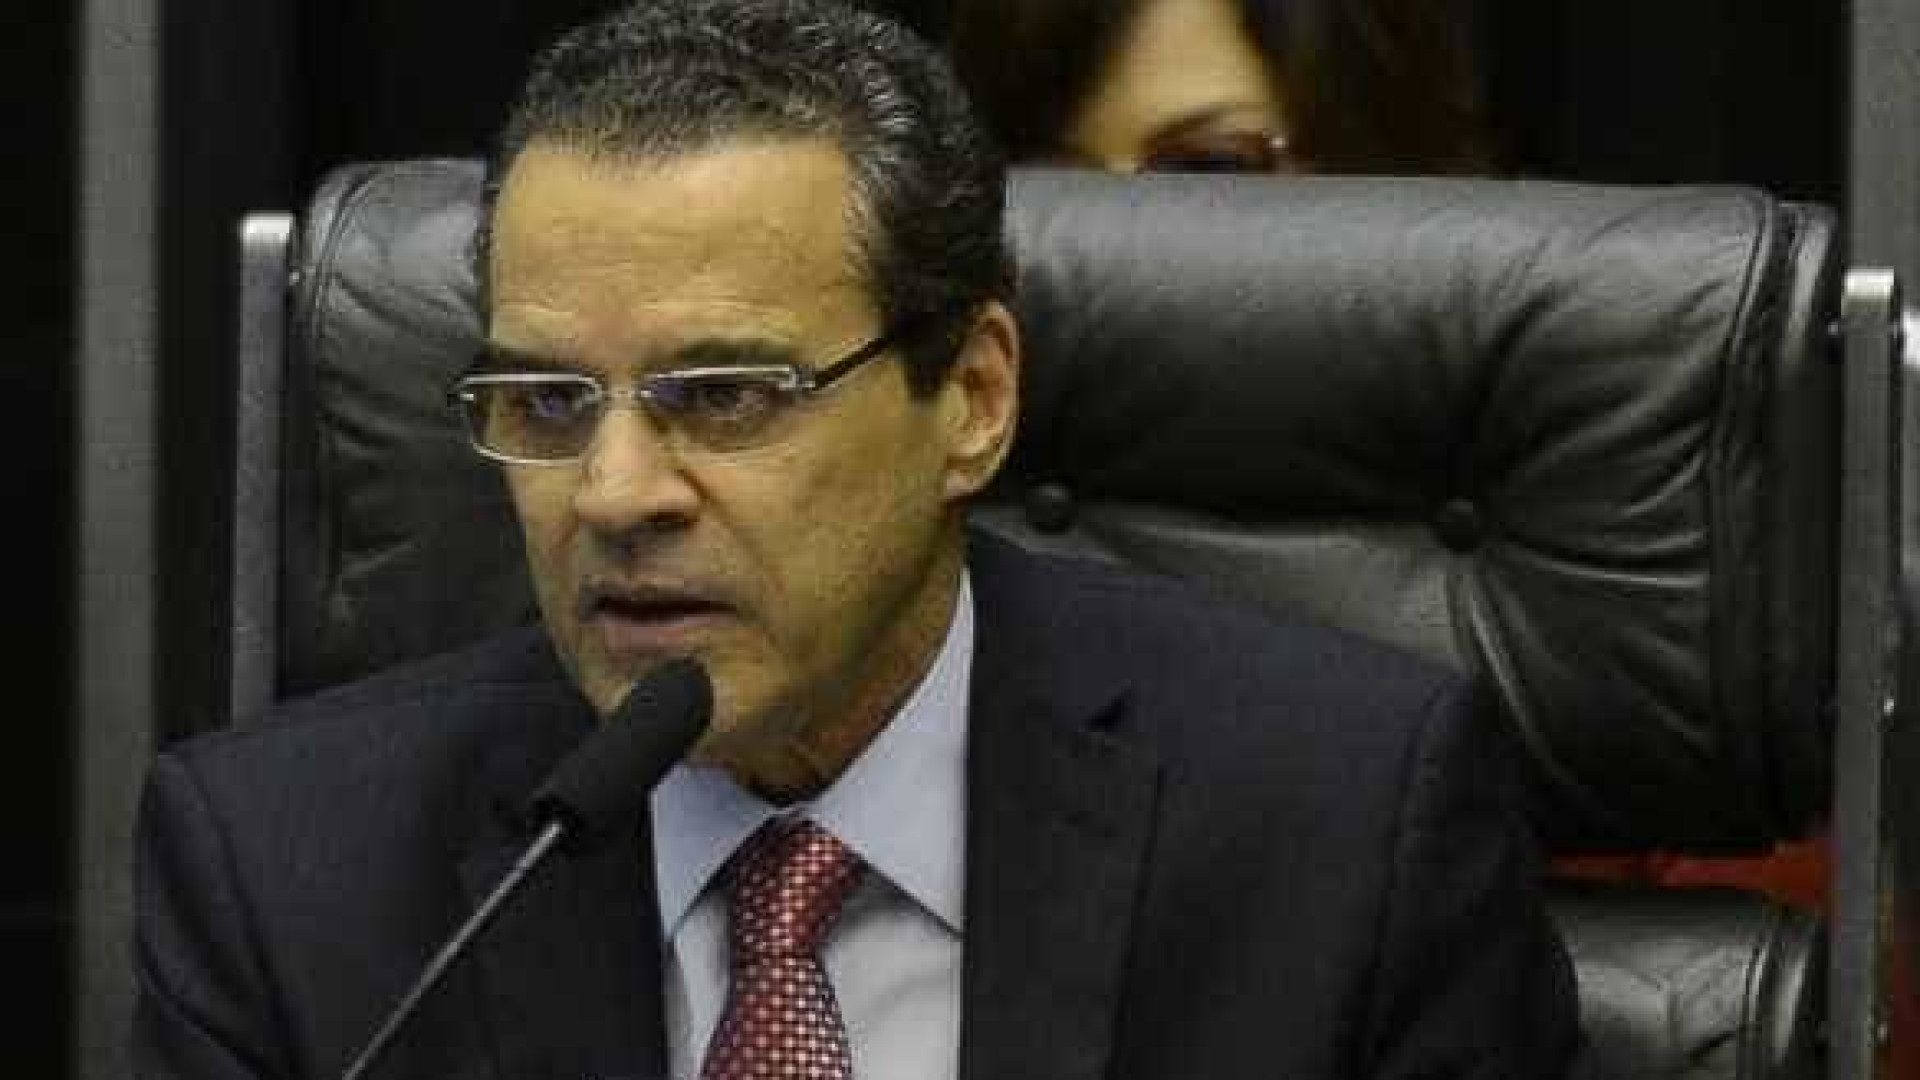 Antes da demissão, Henrique Alves disse que delator 'enlouqueceu'